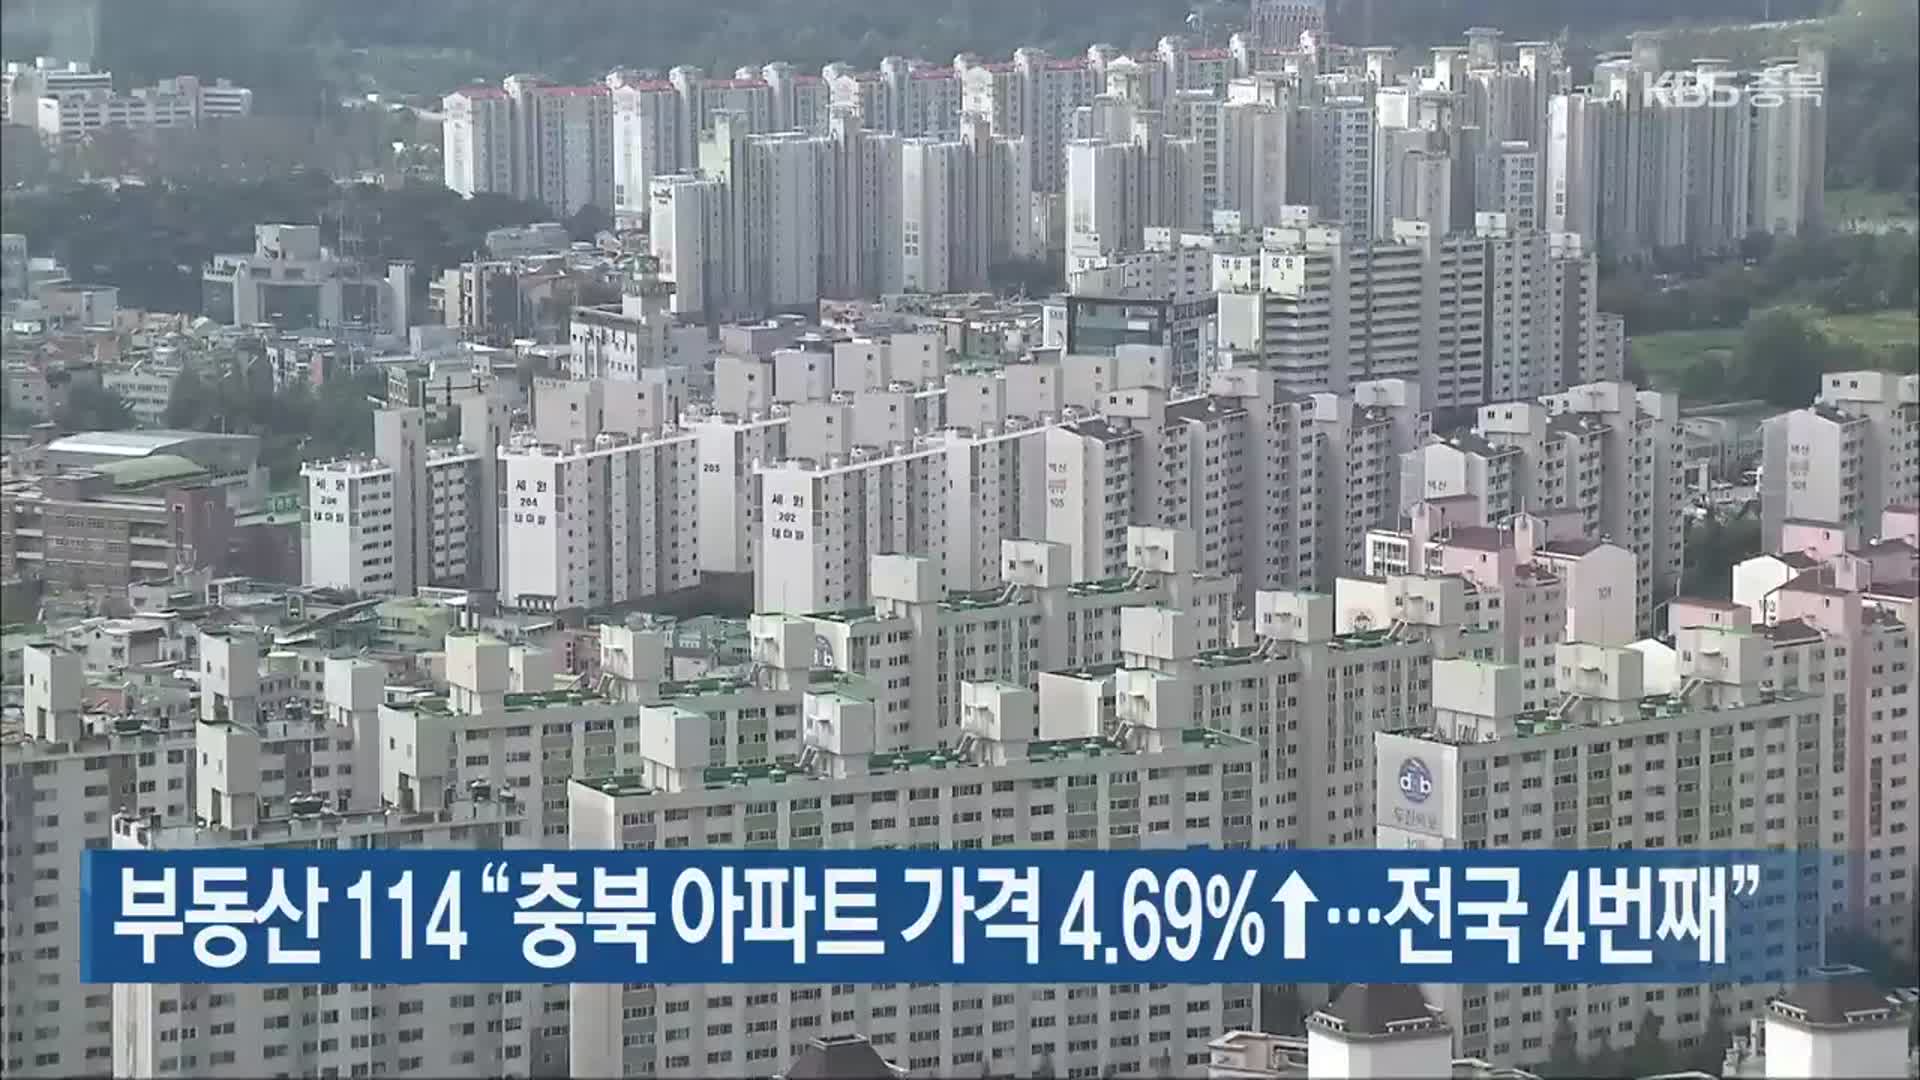 부동산 114 “충북 아파트 가격 4.69%↑…전국 4번째”